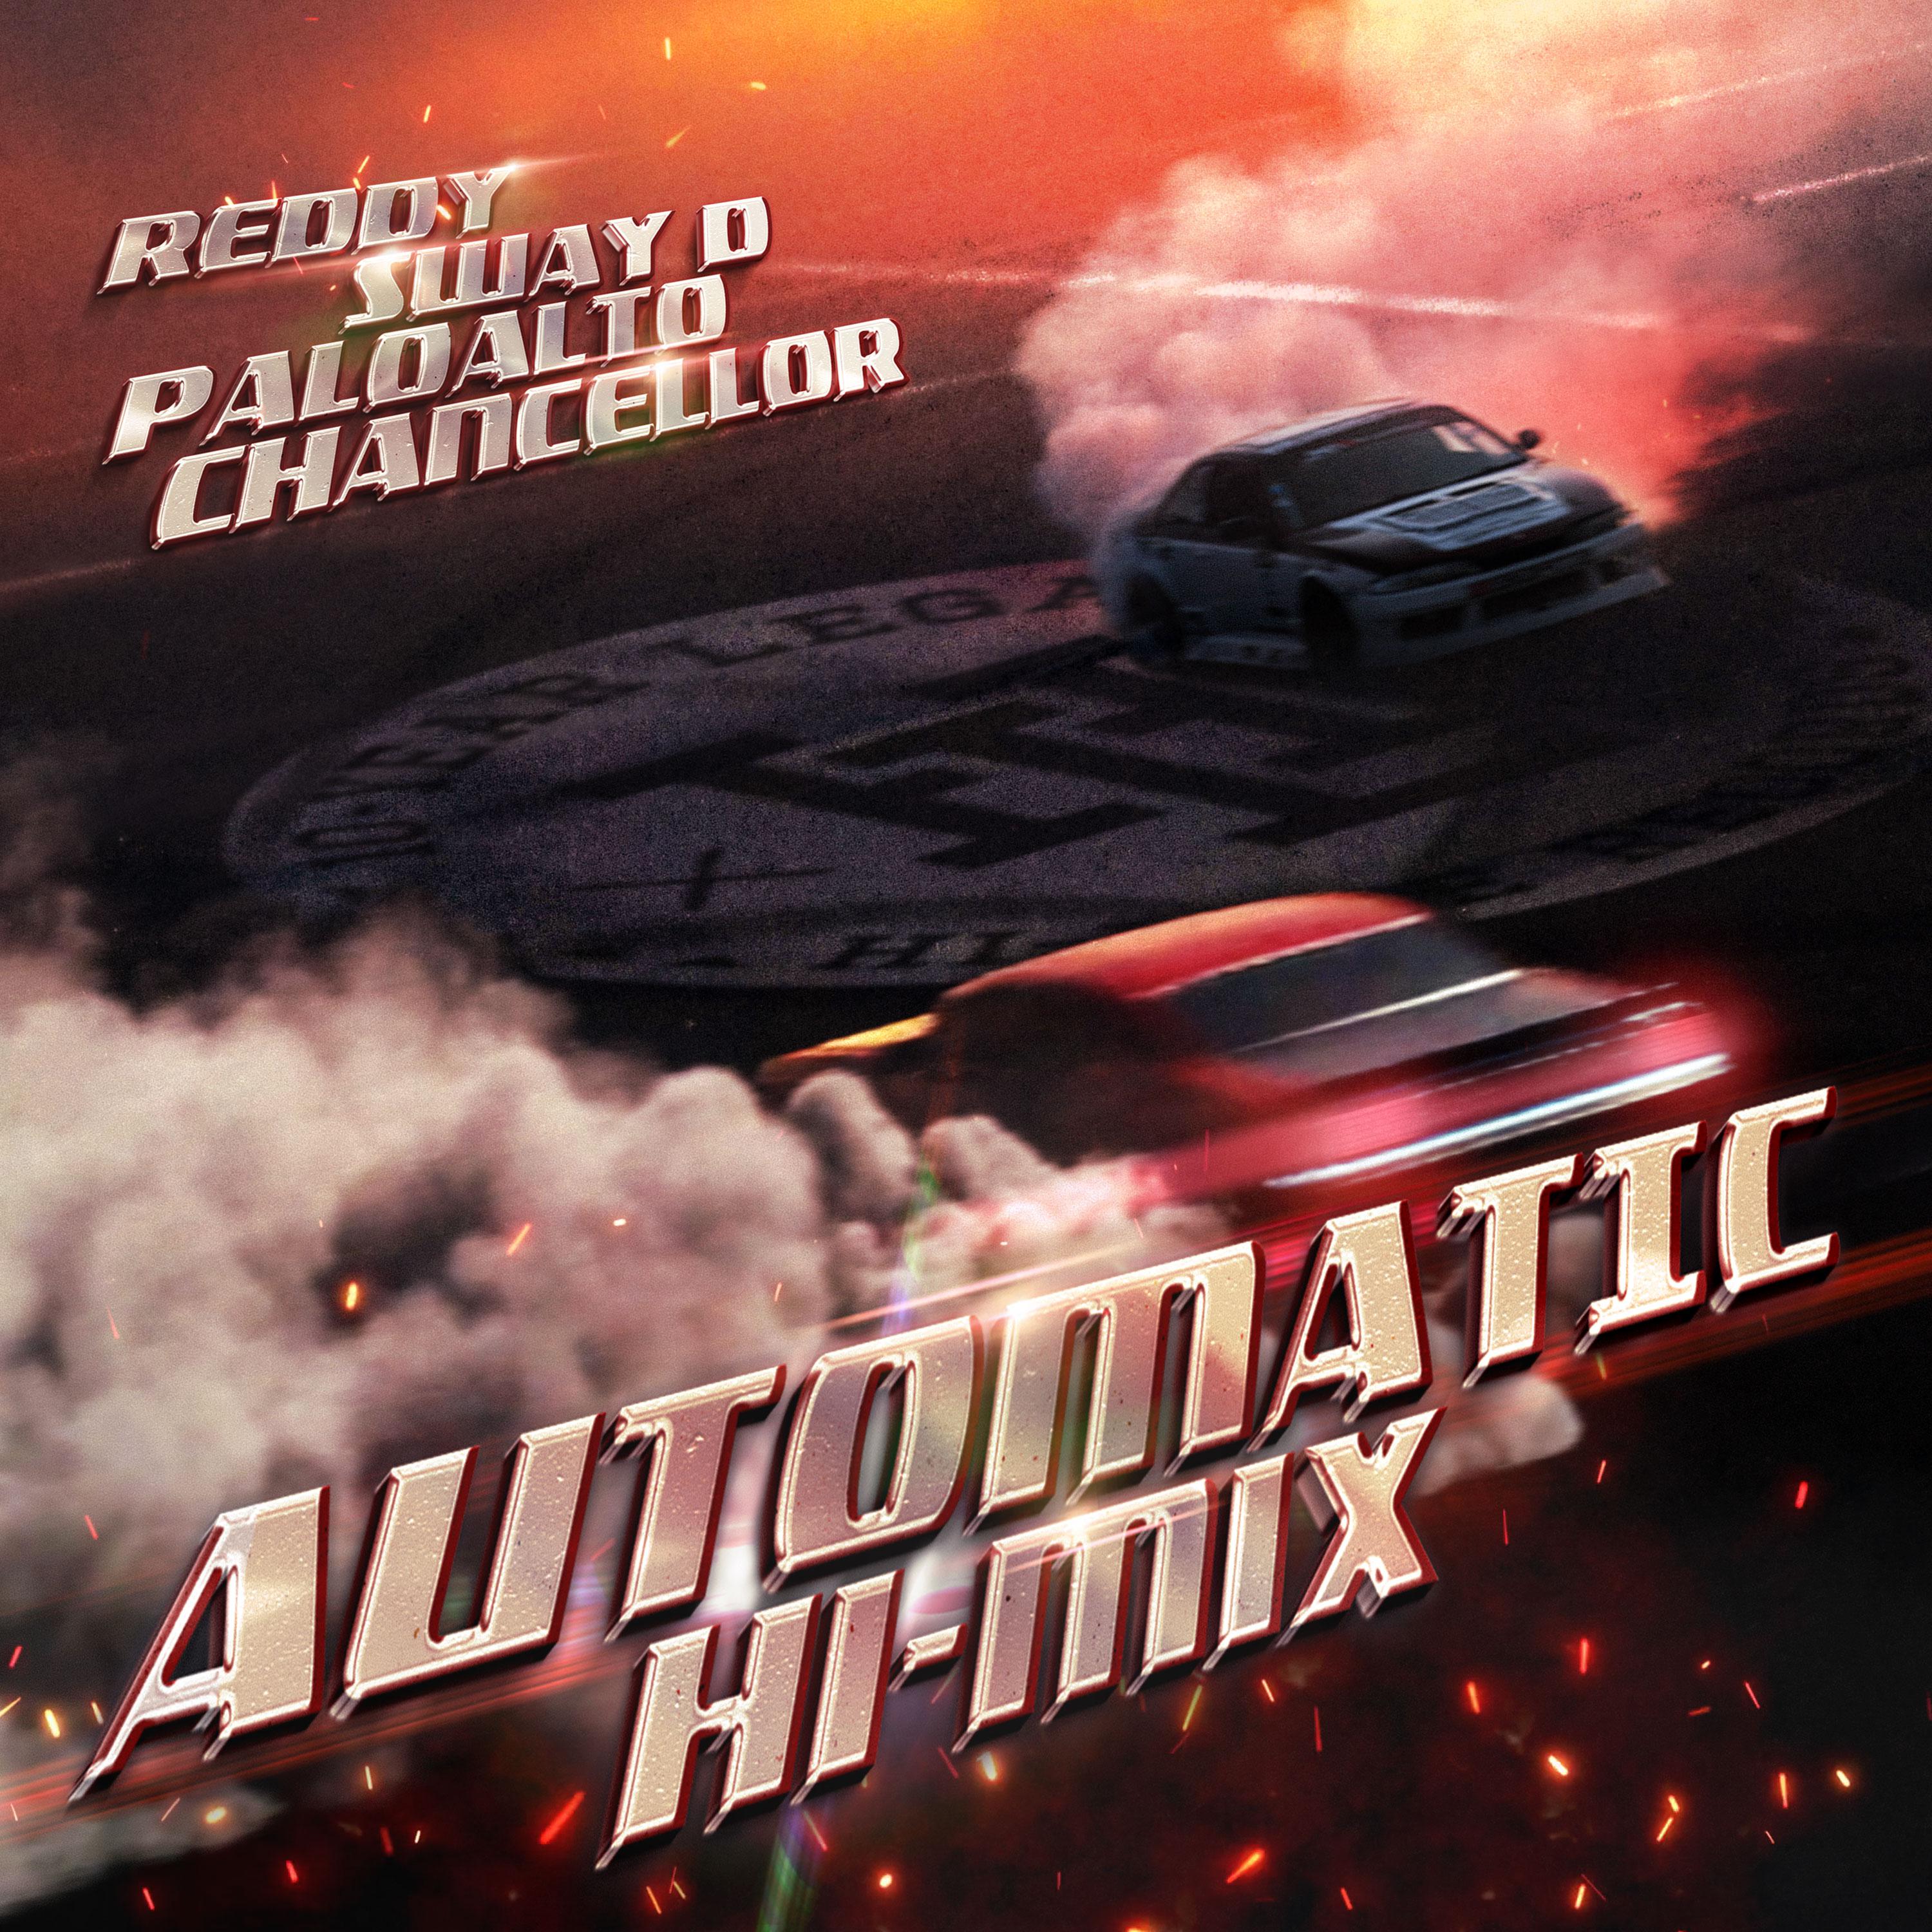 Automatic (Hi-Mix)歌词 歌手Reddy / SWAY D / Paloalto / Chancellor-专辑Automatic (Hi-Mix)-单曲《Automatic (Hi-Mix)》LRC歌词下载